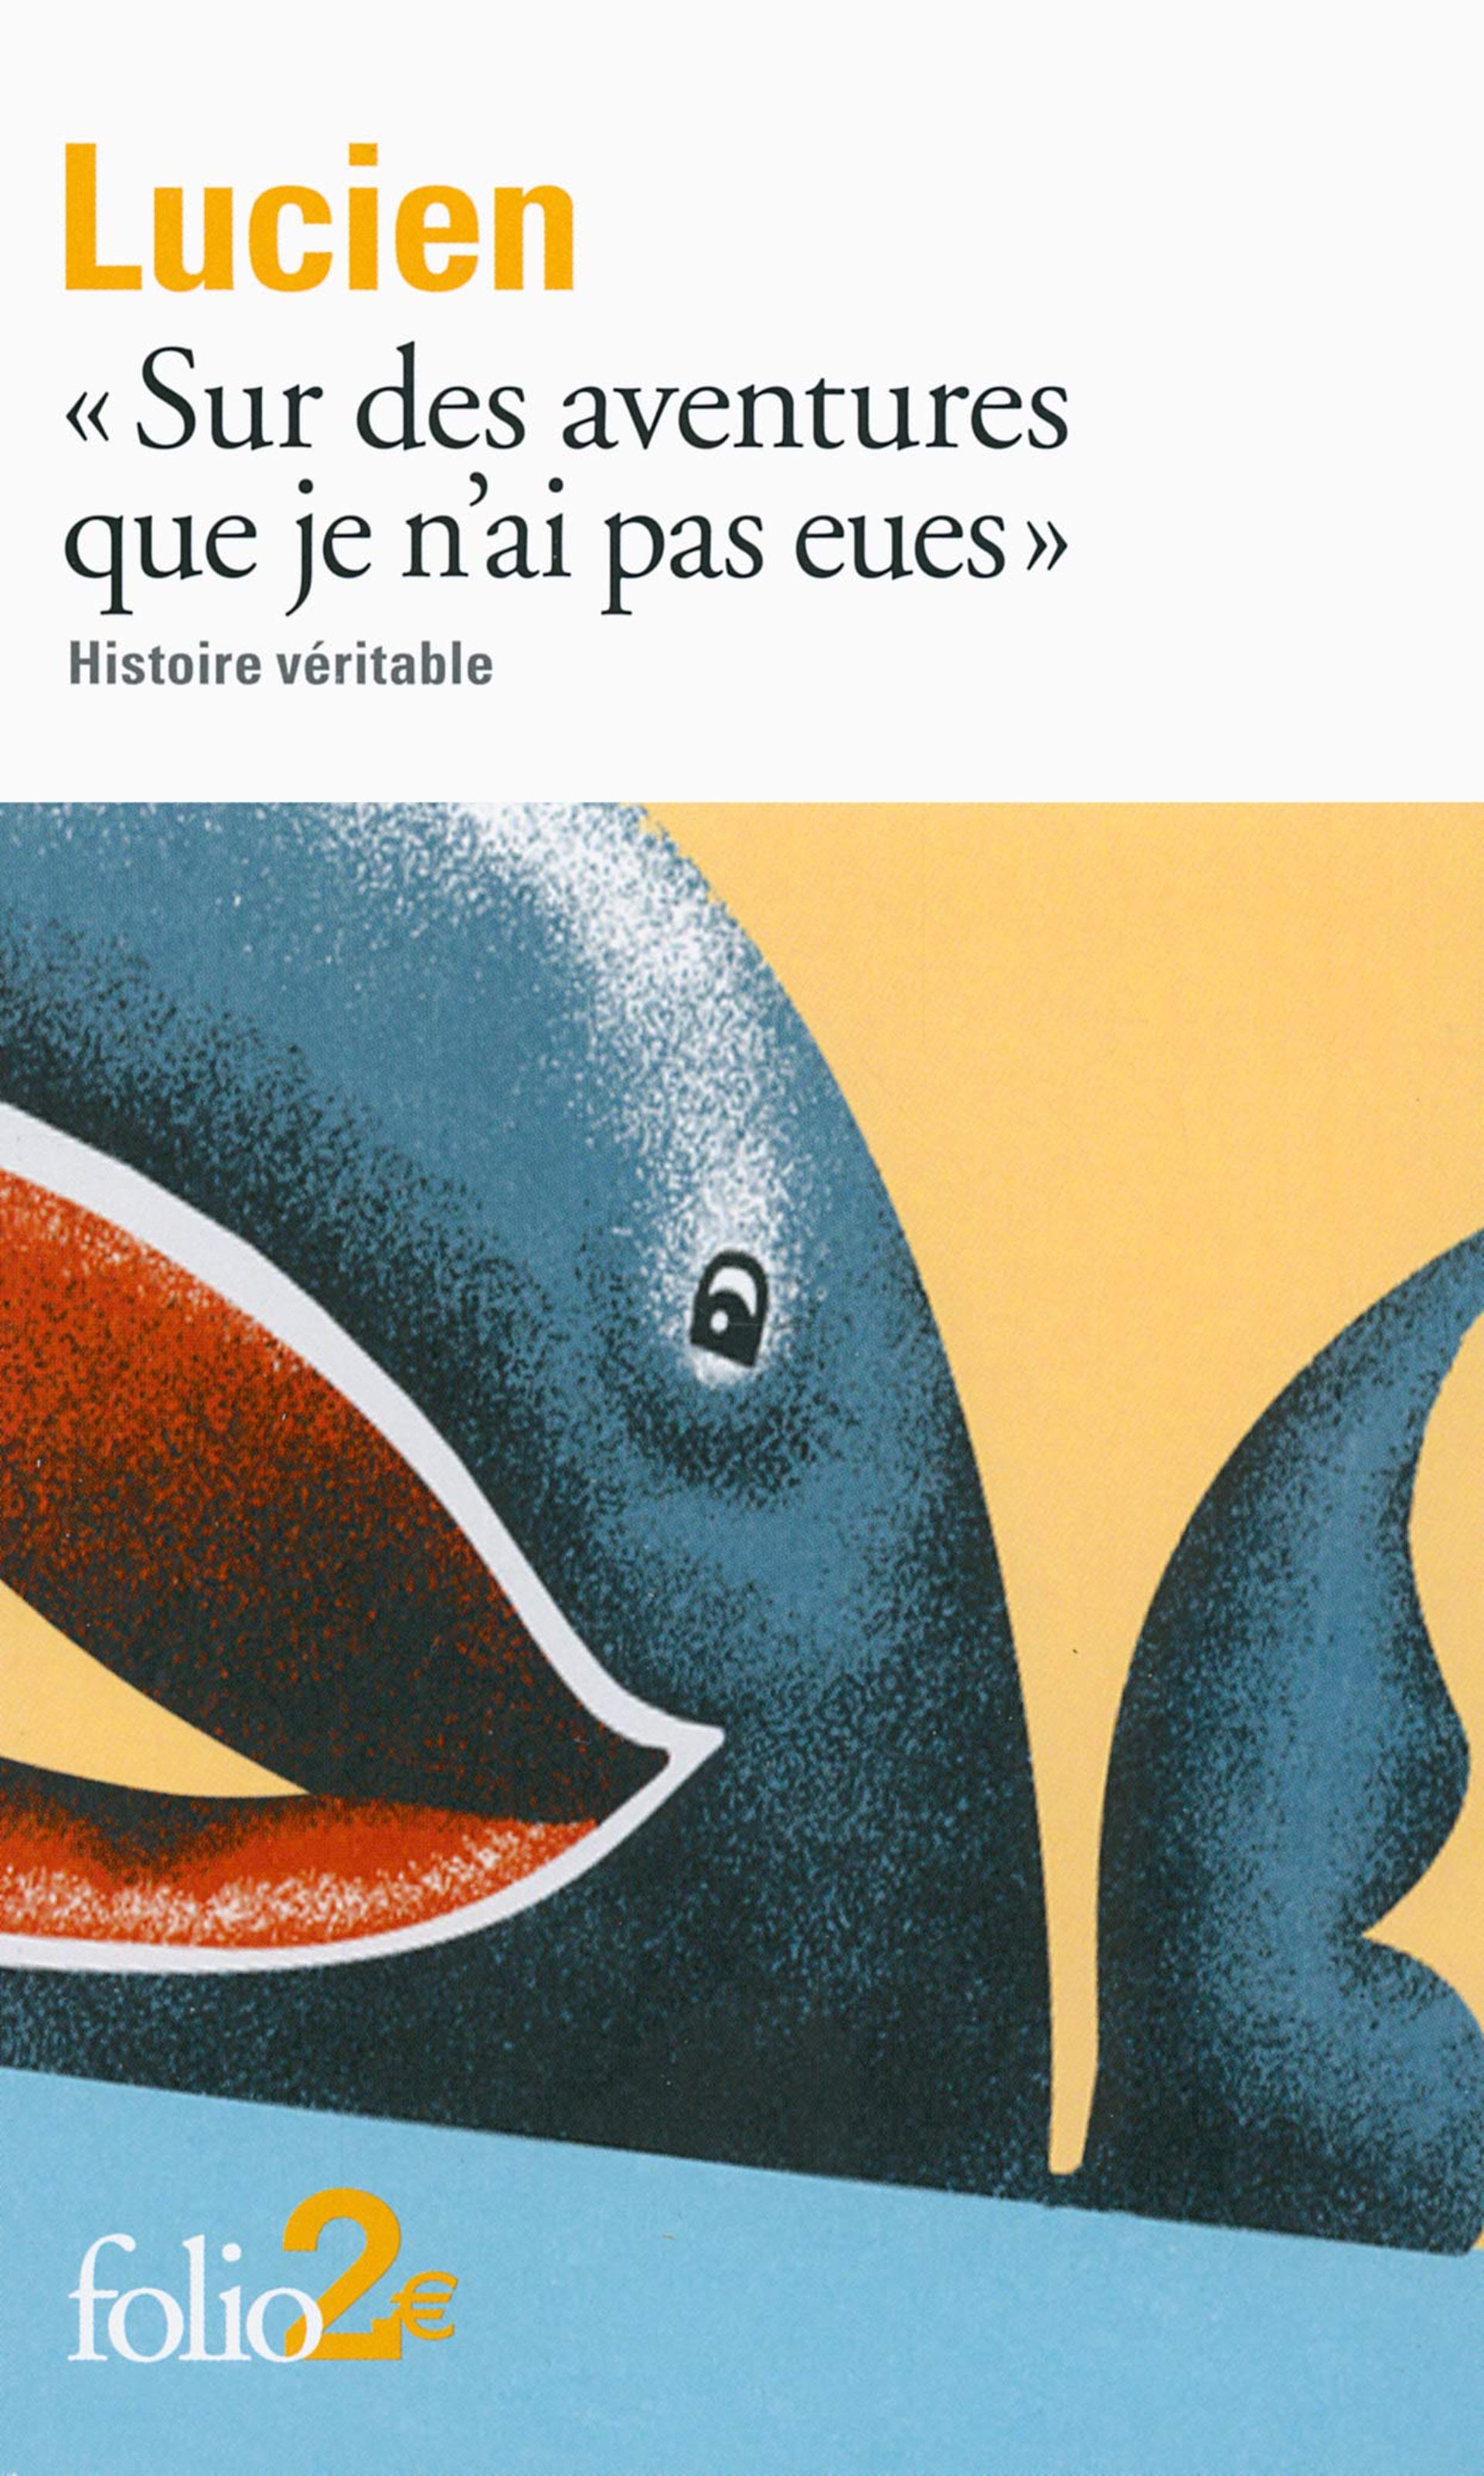 « Sur les aventures que je n’ai pas eues », Lucien de Samosate, Gallimard/Folio, 2013. 